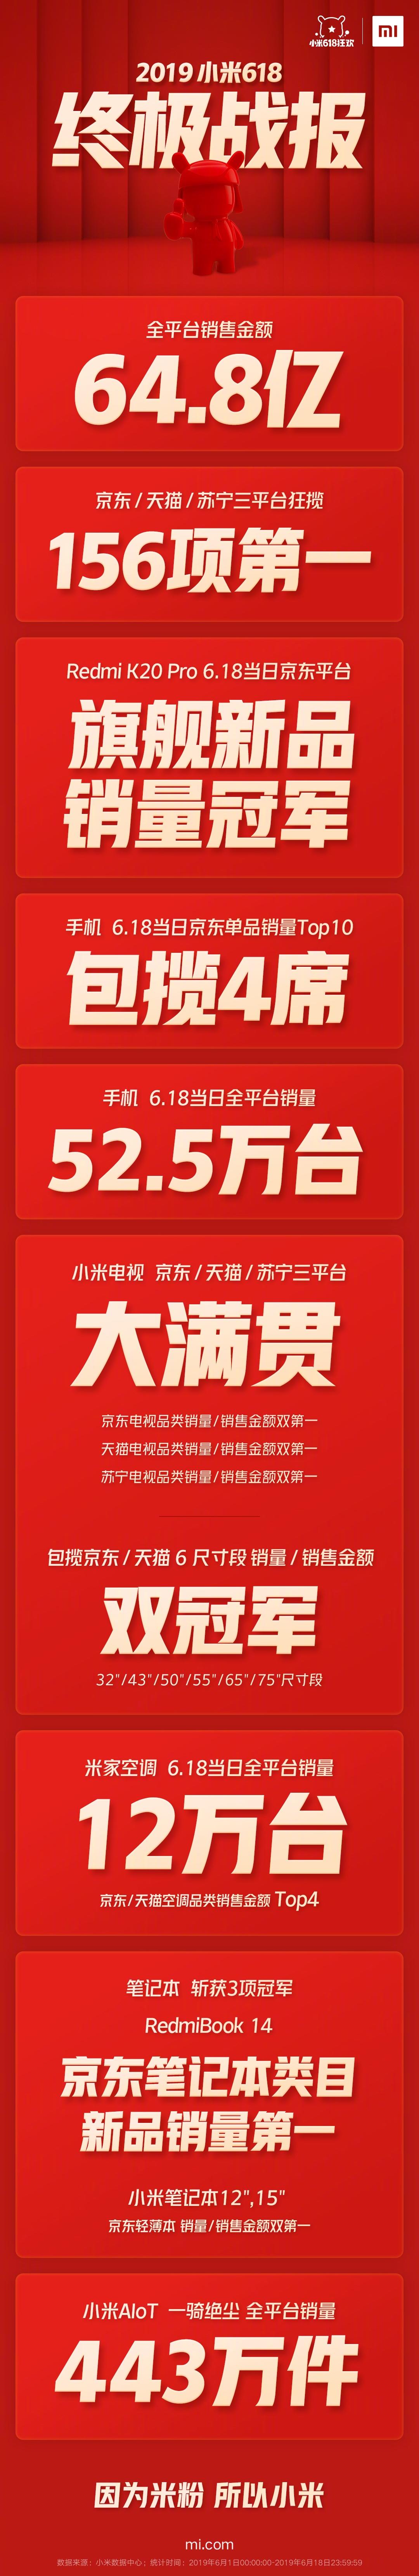 小米618战报公布：一天卖52.5万台手机 狂揽156项第一